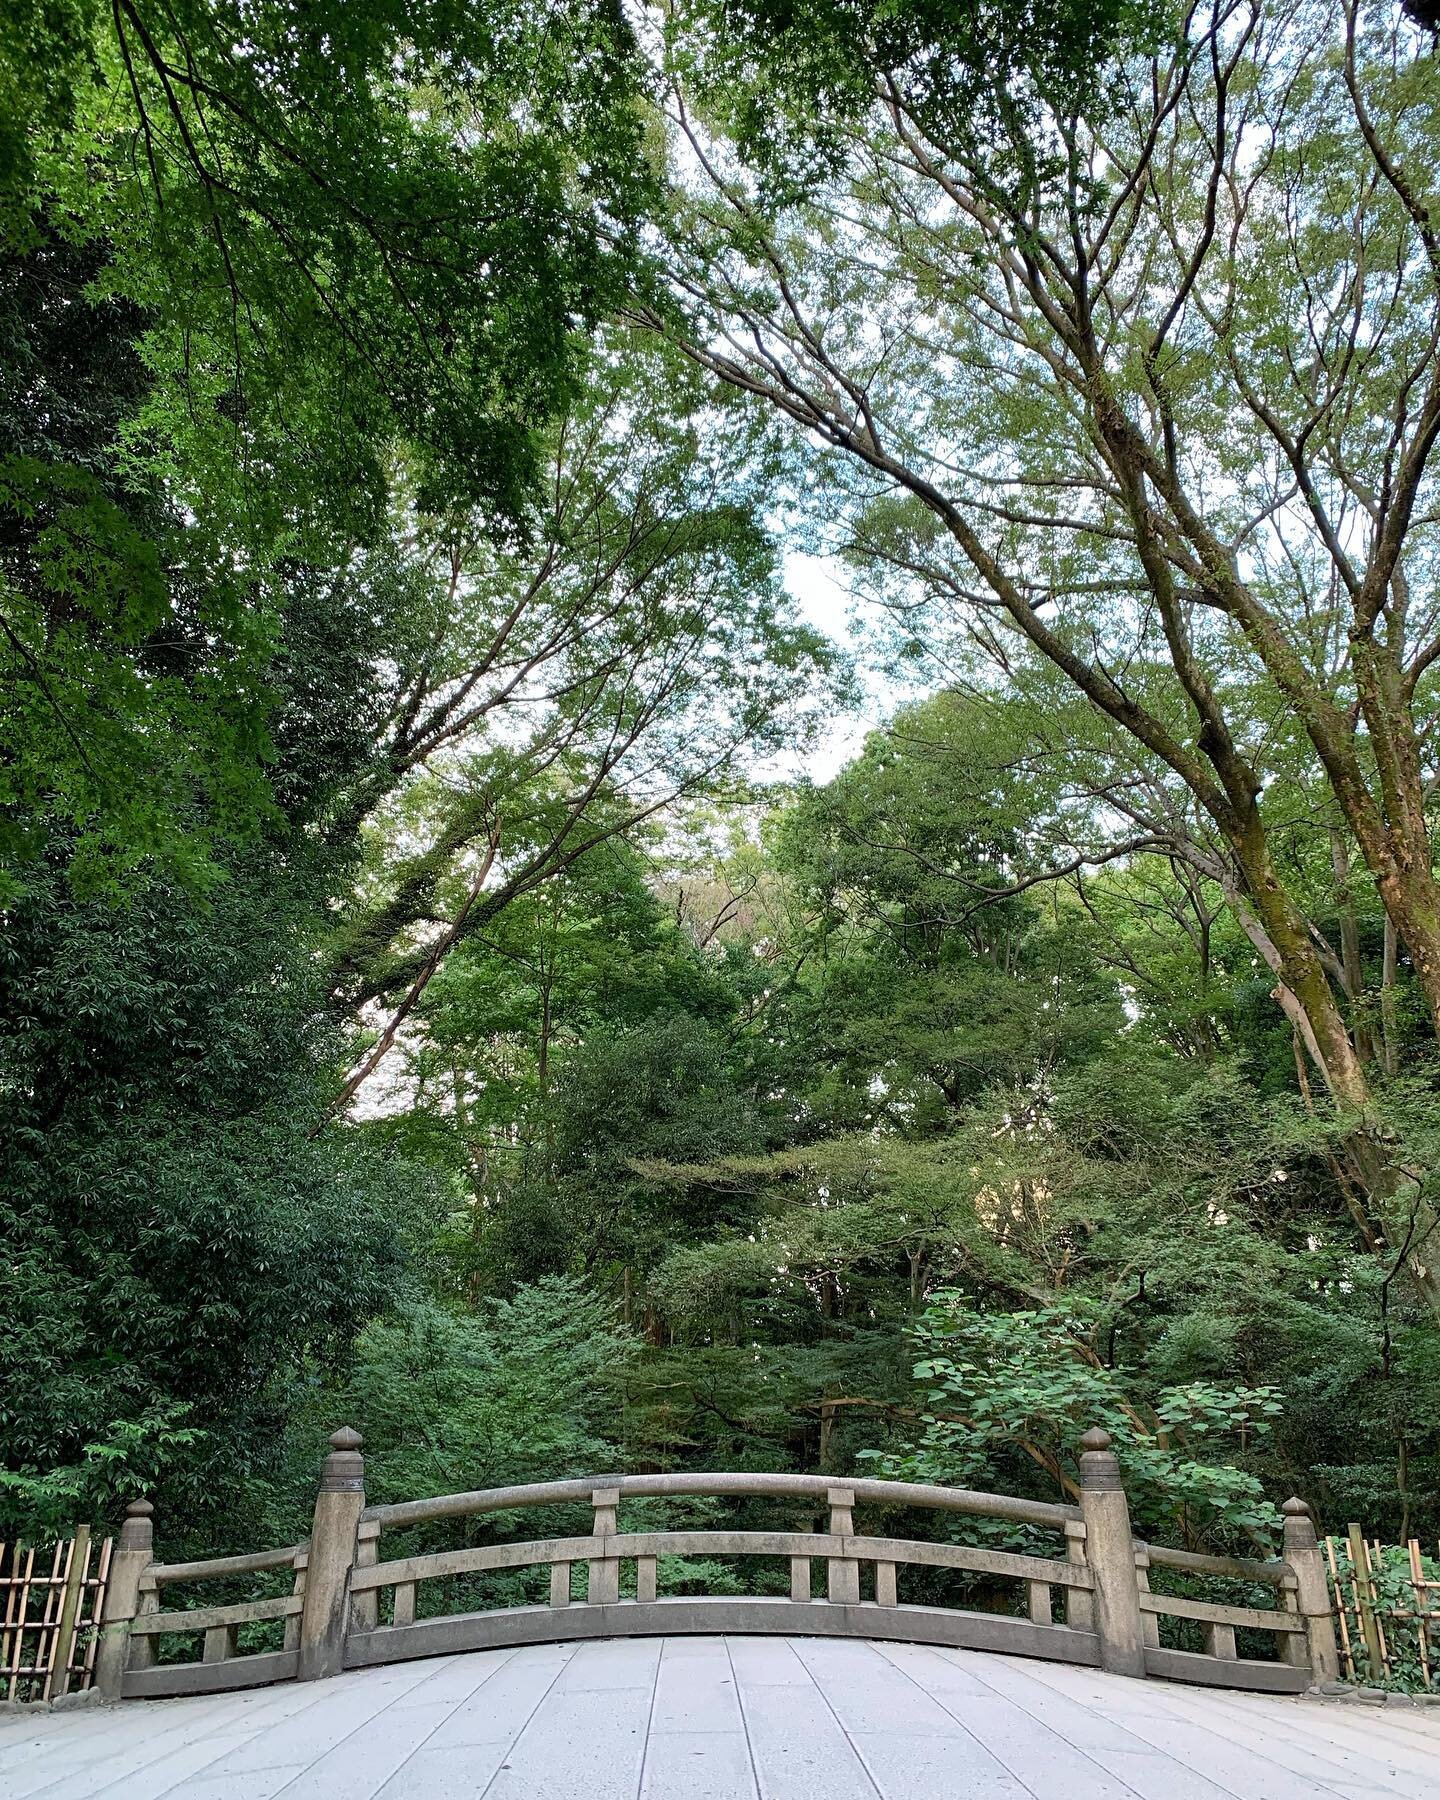 We&rsquo;ll cross that bridge when we get there. #japan #tokyo #shibuya #harajuku #meijijingu #yoyogipark #bridge #nature #green #🇯🇵